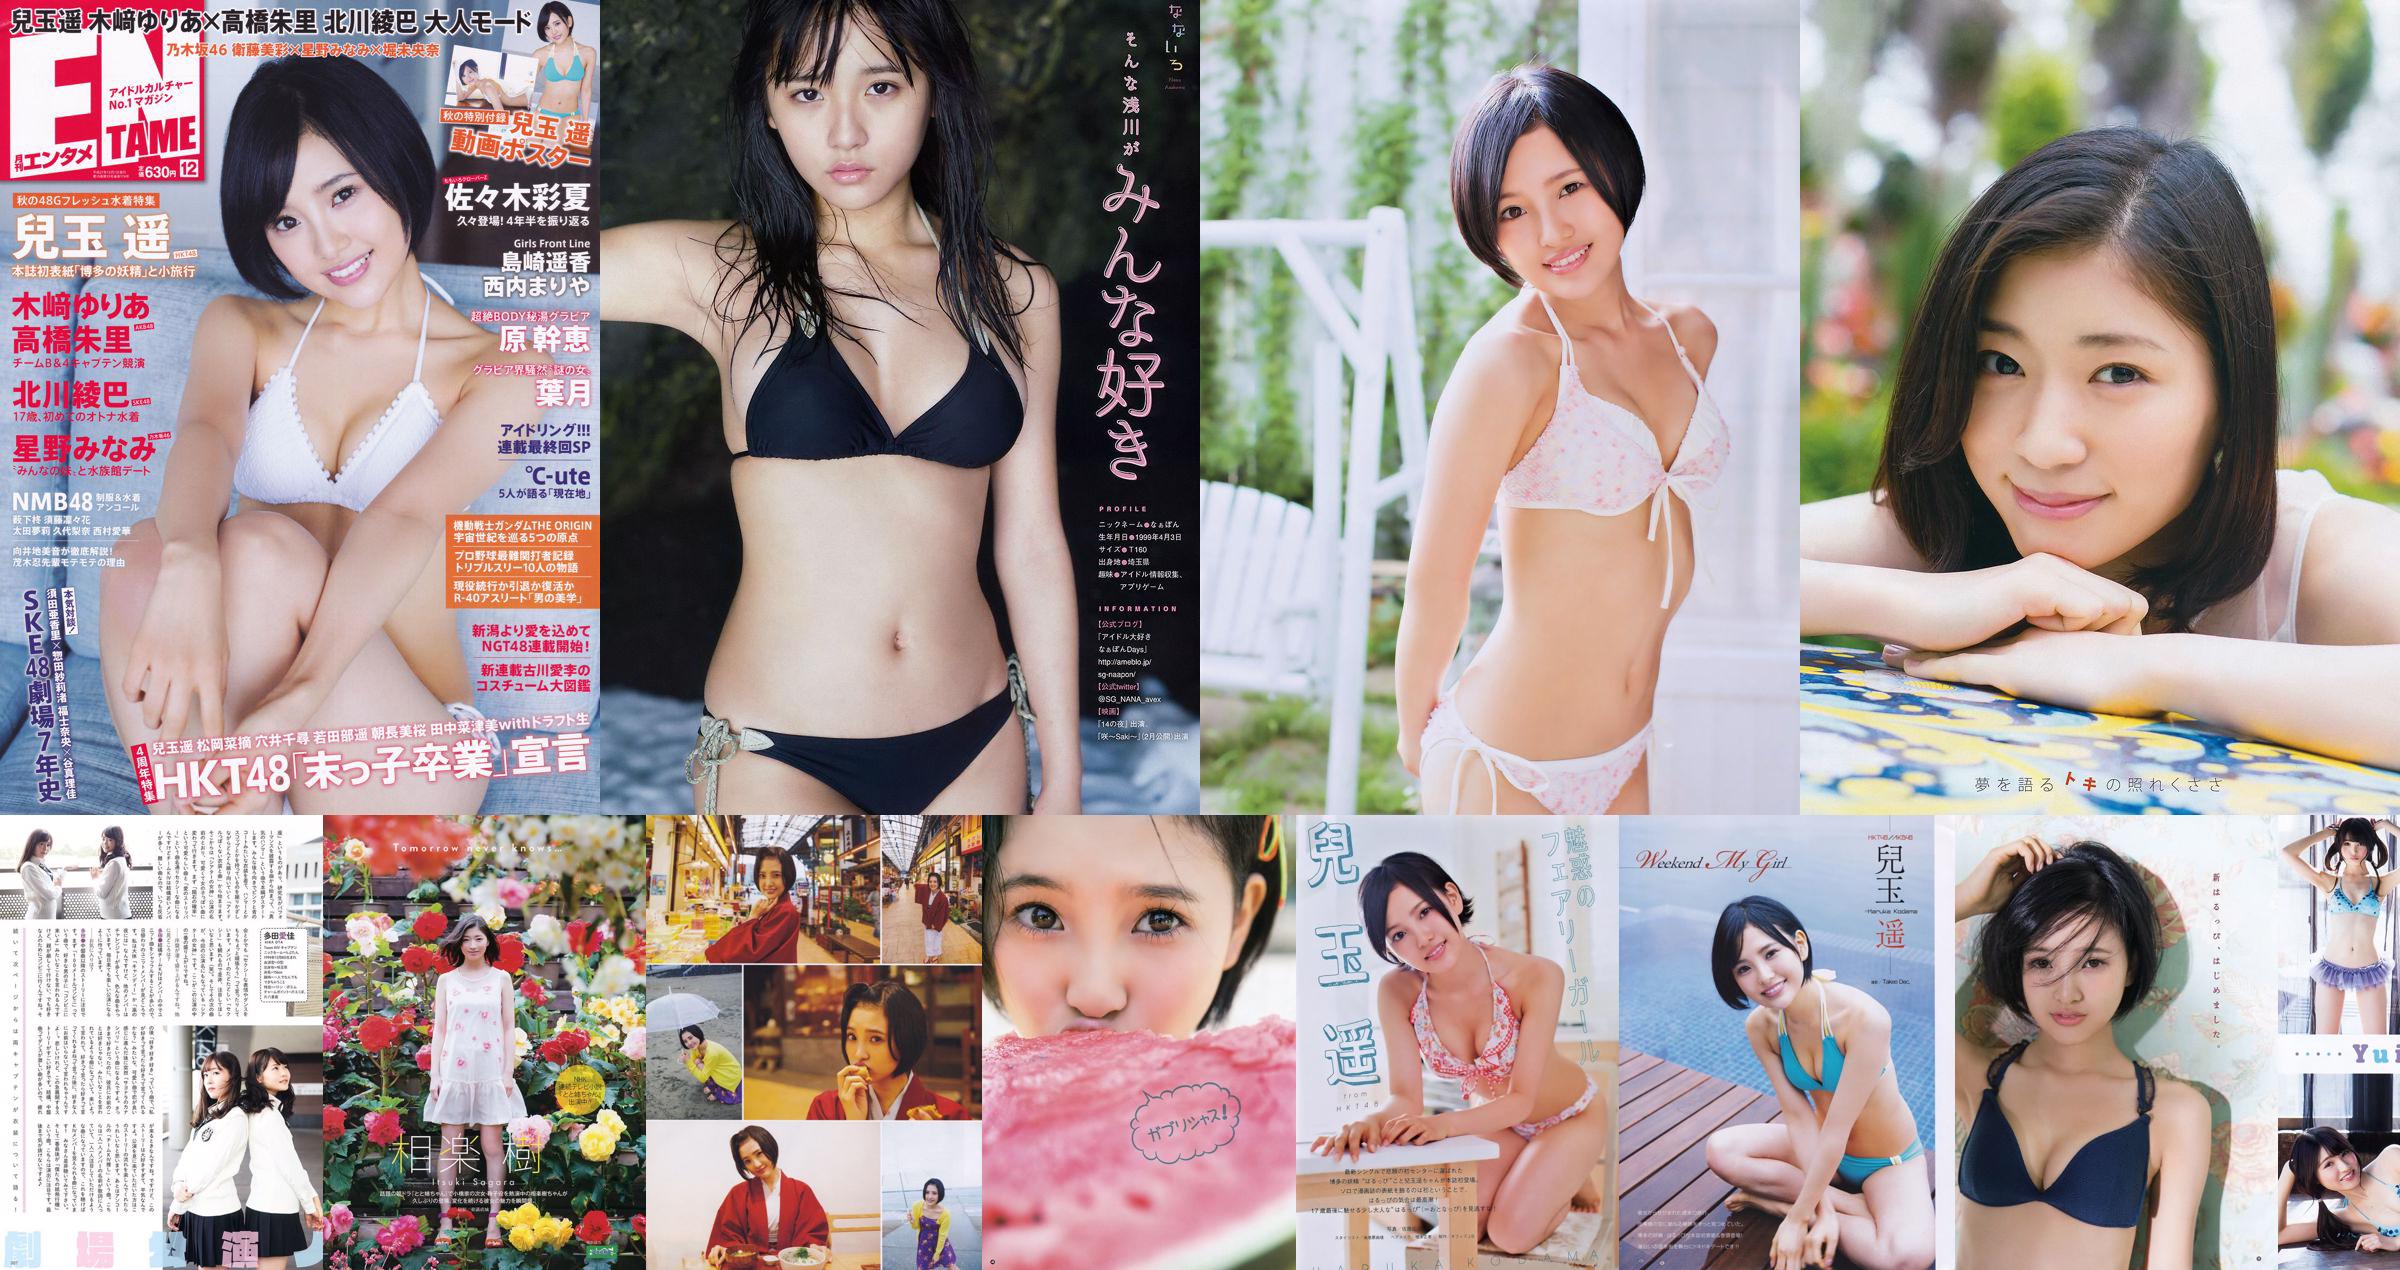 [Young Gangan] Haruka Kodama Itsuki Sagara 2016 No.11 Photo Magazine No.fc7d6f Pagina 1